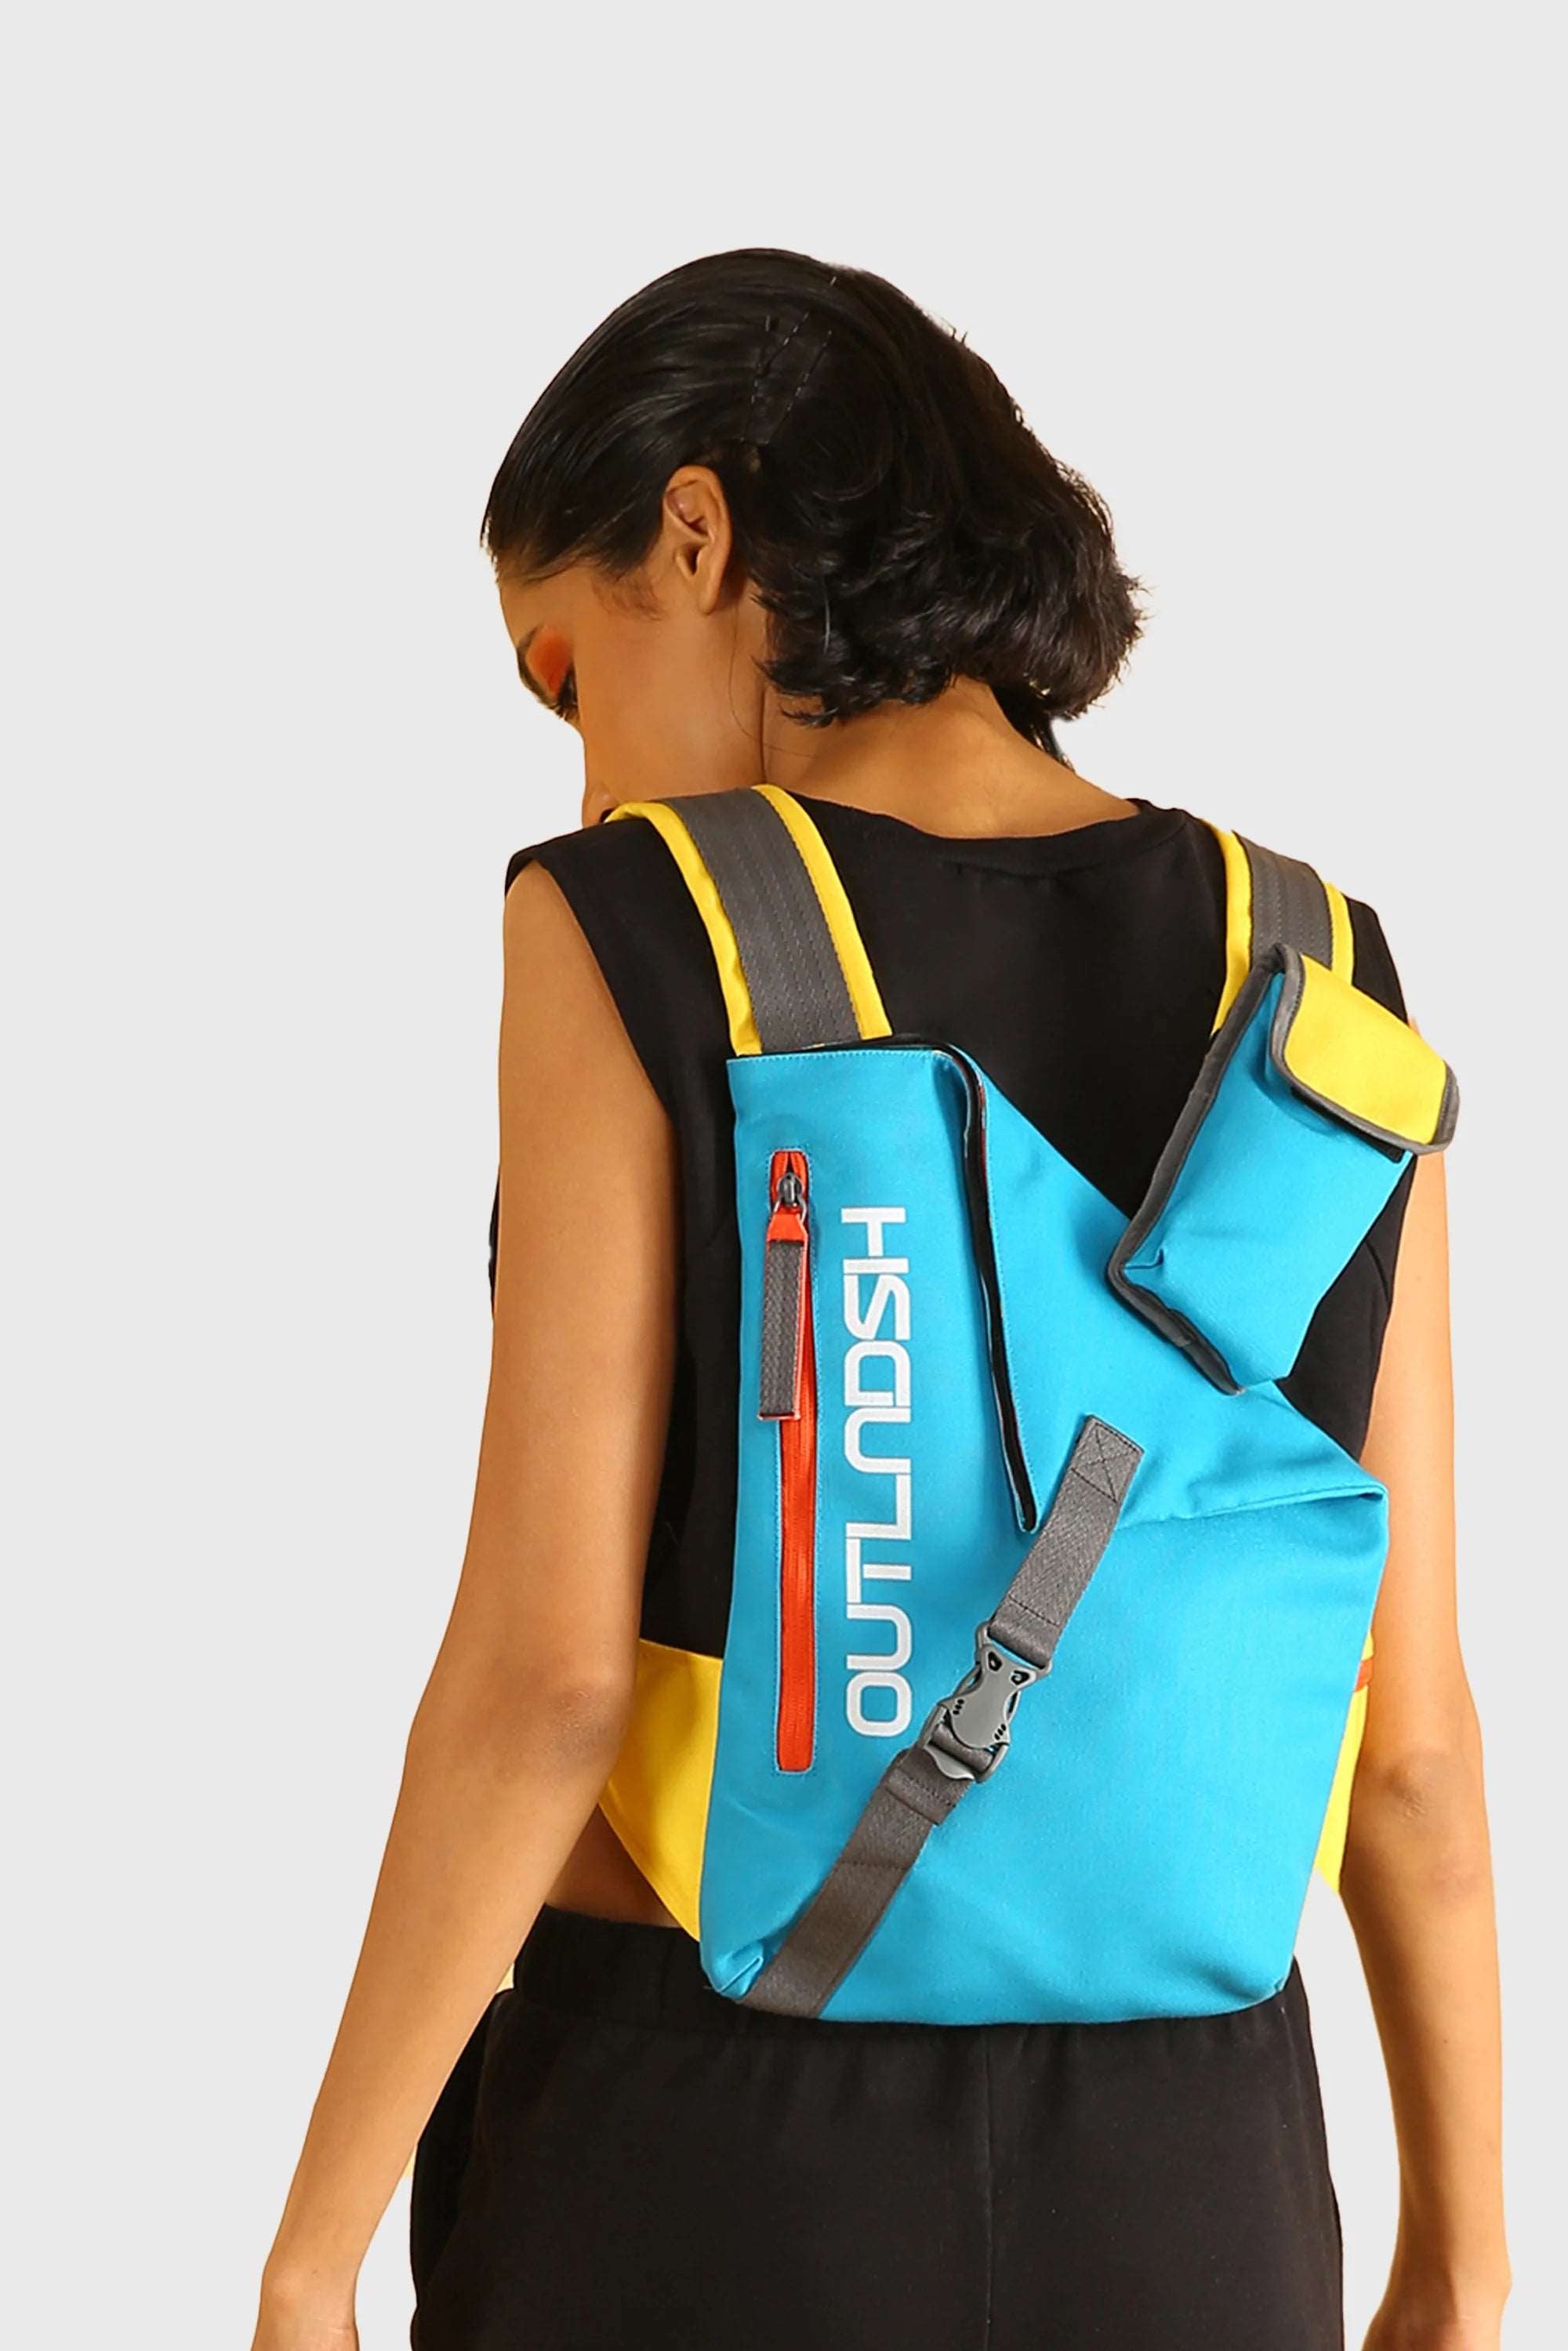 OUTLNDSH Backpack bag plus chest bag blue color 